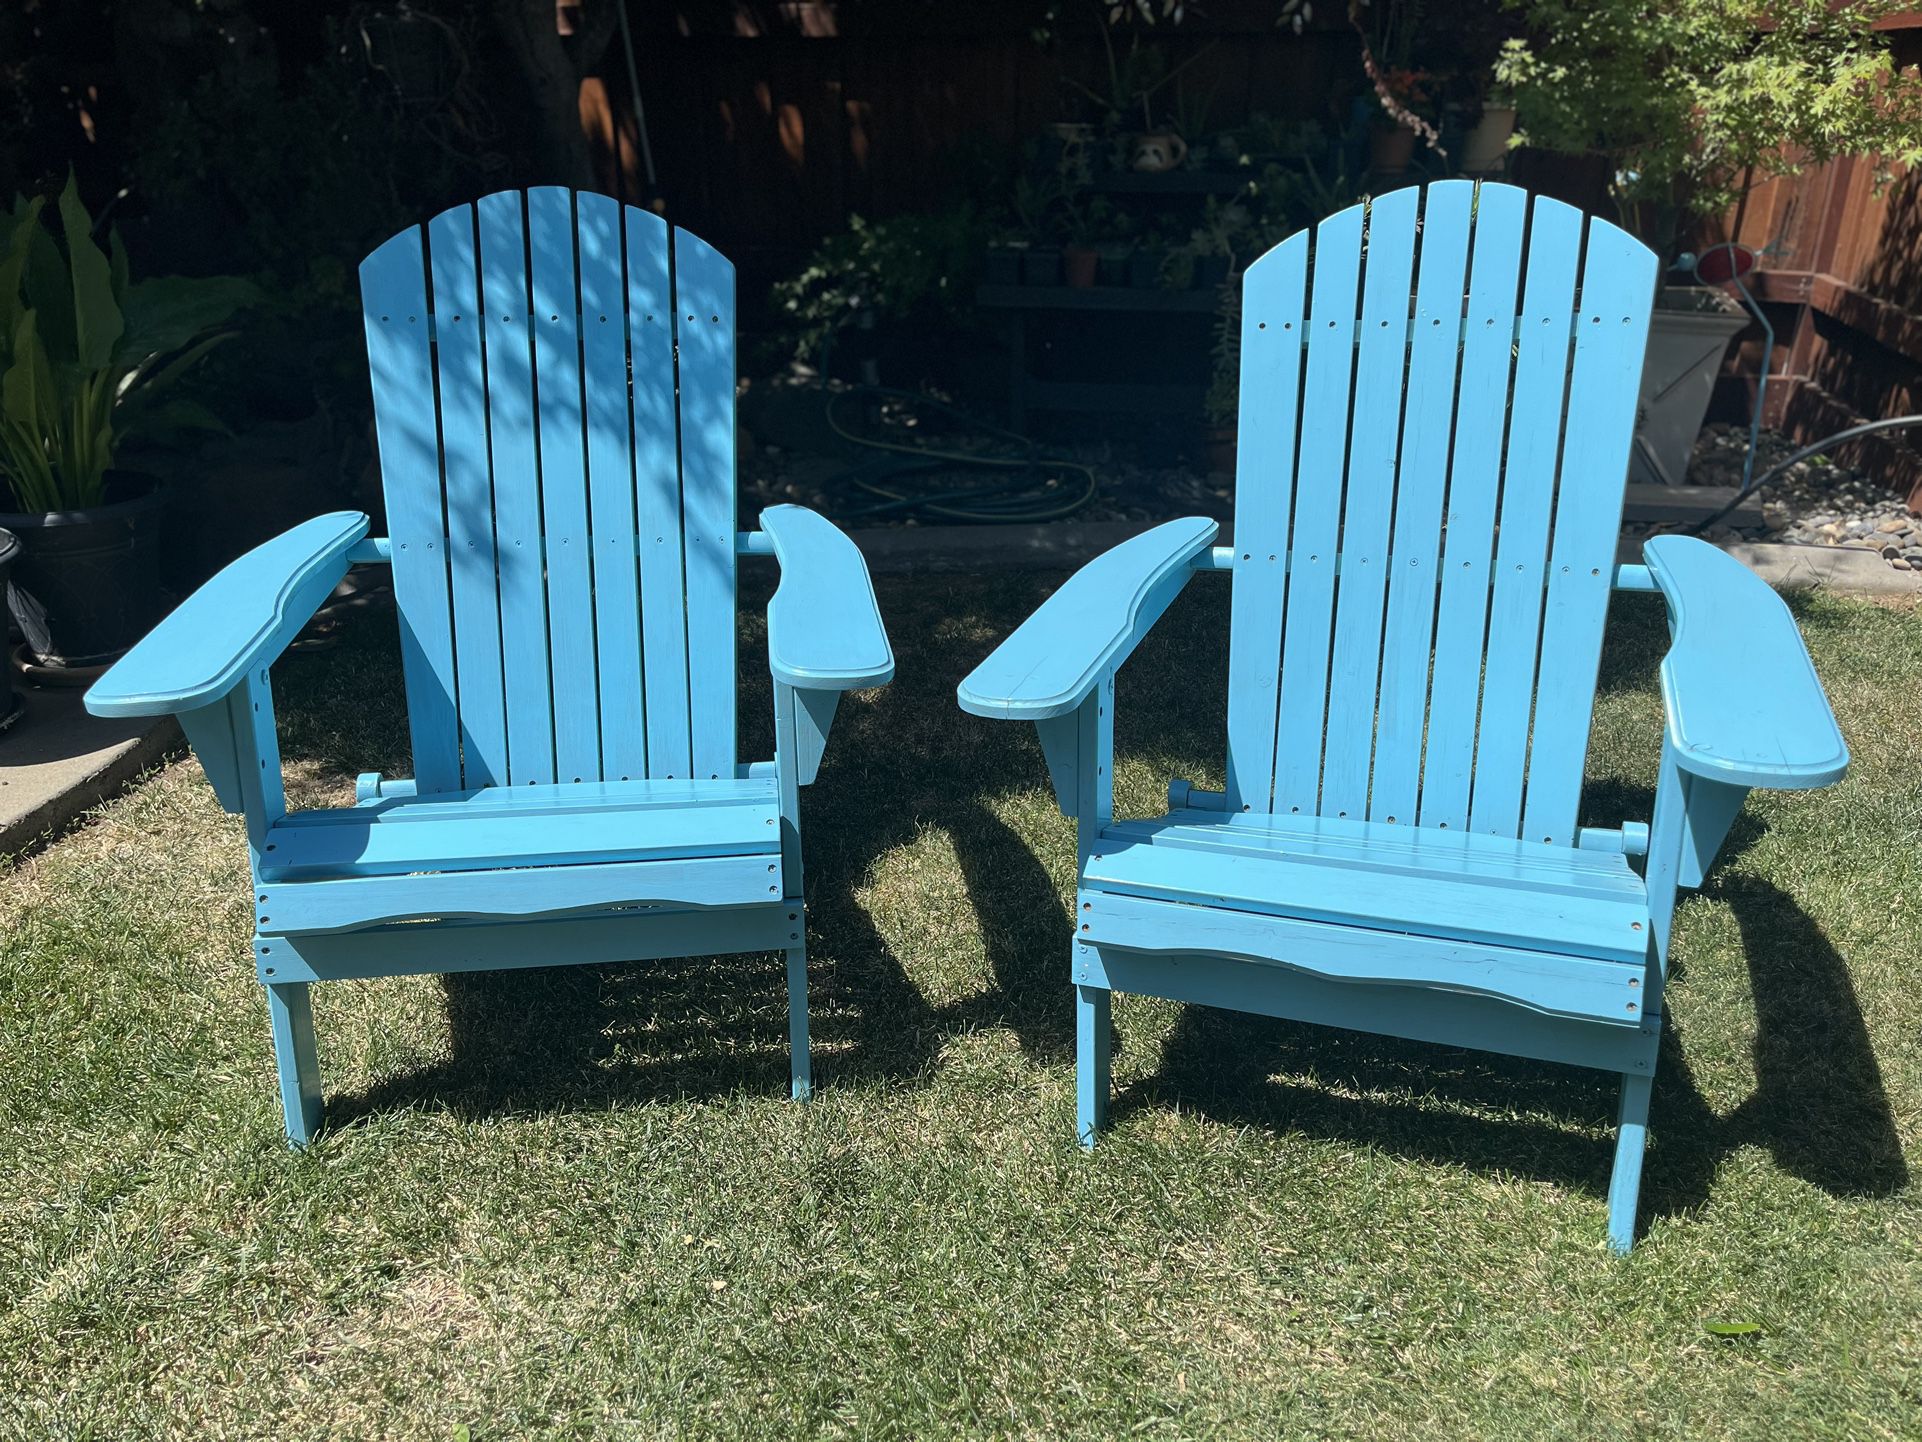 2 Adirondack chairs